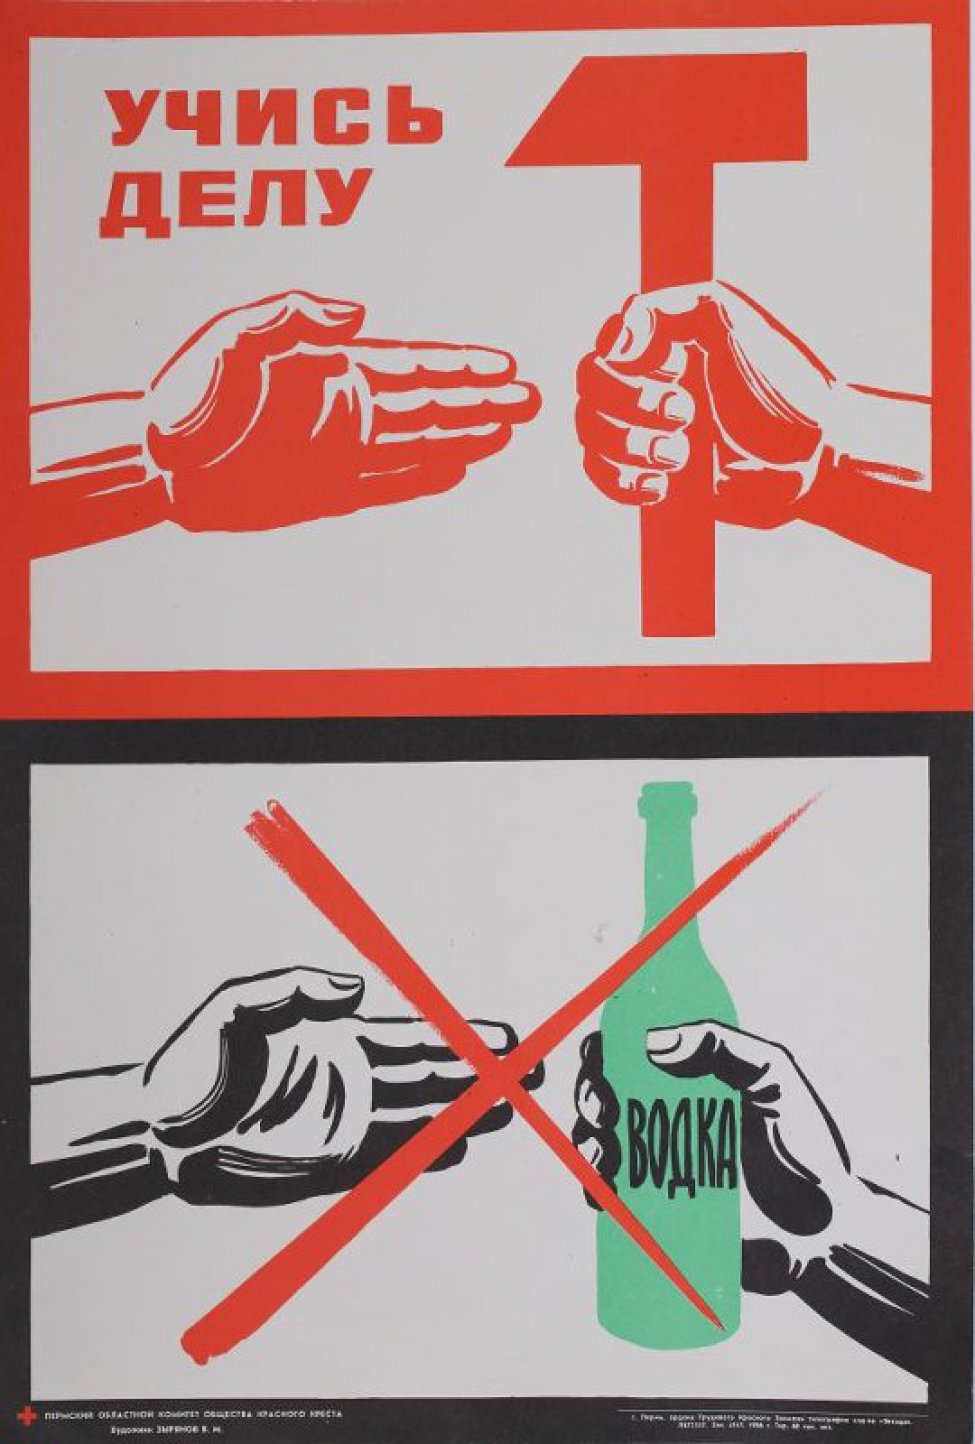 На белом фоне в верхней части композиции справа изображена рука, держащая красный молот; слева - ладонь руки. Слева вверху шрифтовая композиция: «Учись делу». В нижней части композиции - справа черная рука, держащая зеленую бутылку водки. Изображение перечеркнуто двумя красными линиями.